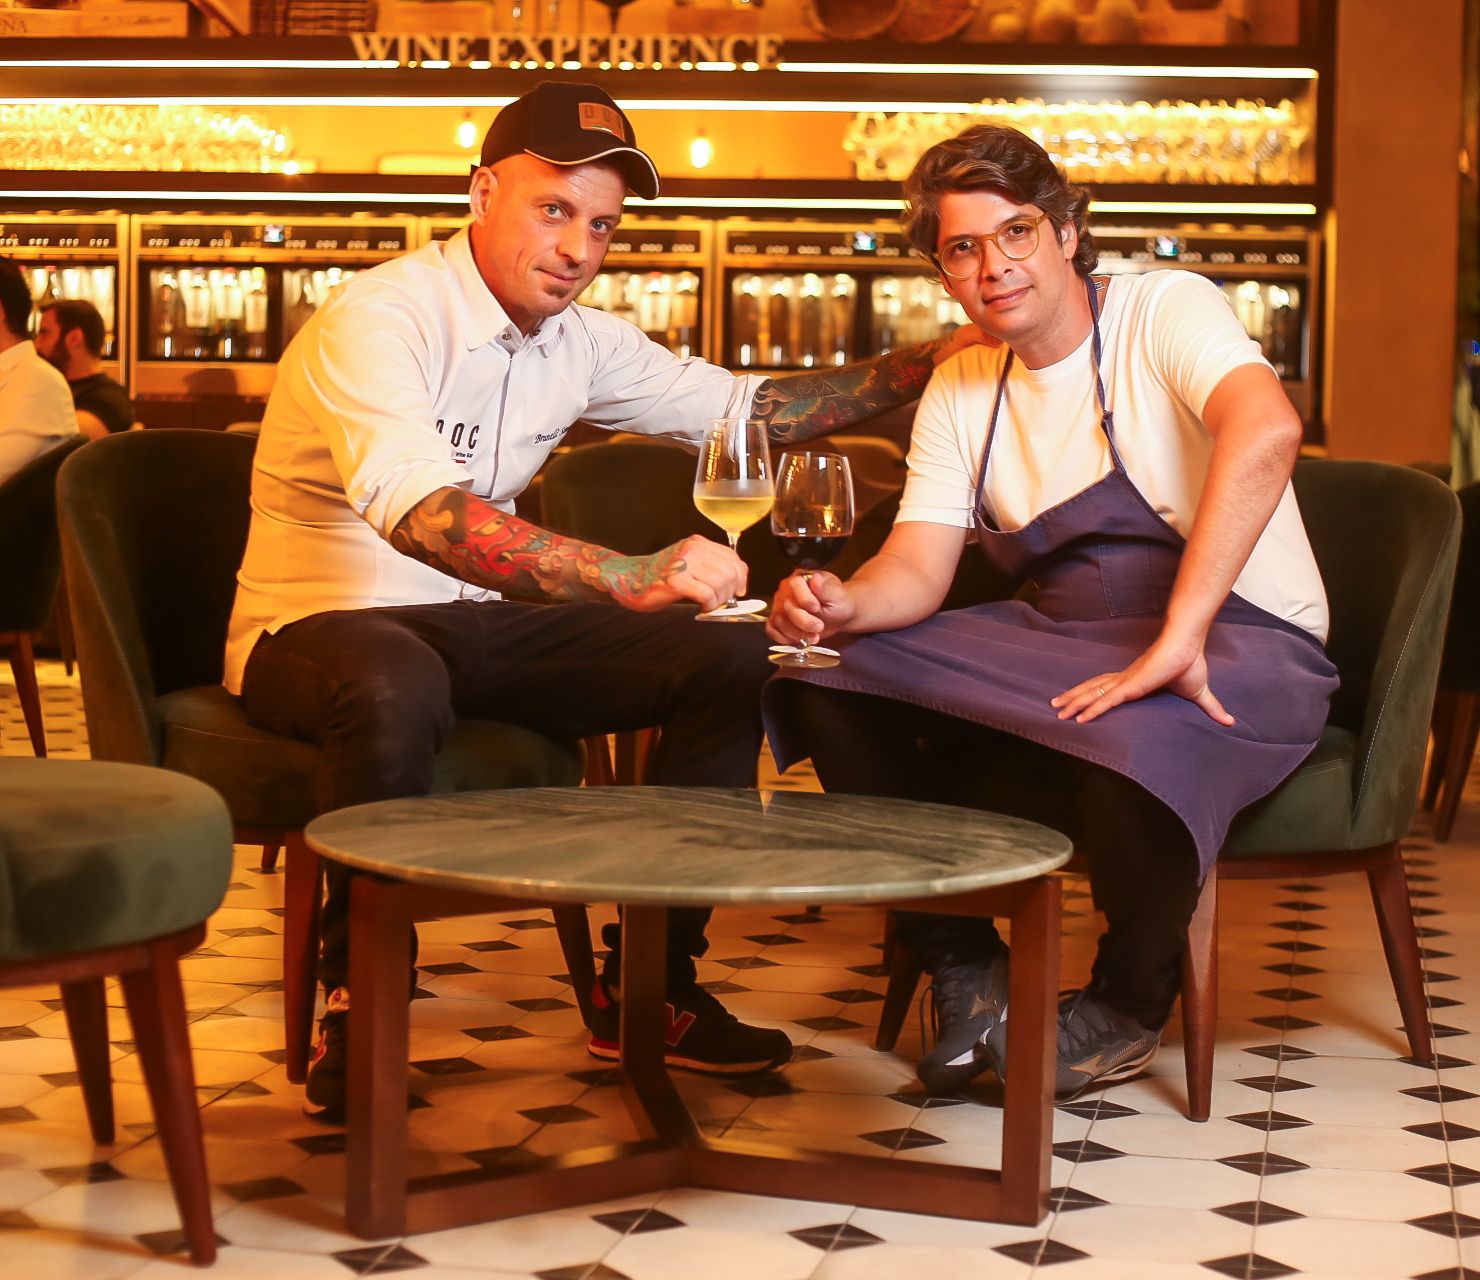 DOC Trattoria & Wine Bar realiza Jantar a Quatro Mãos com os renomados chefs Simone Brunelli e Ivan Prado